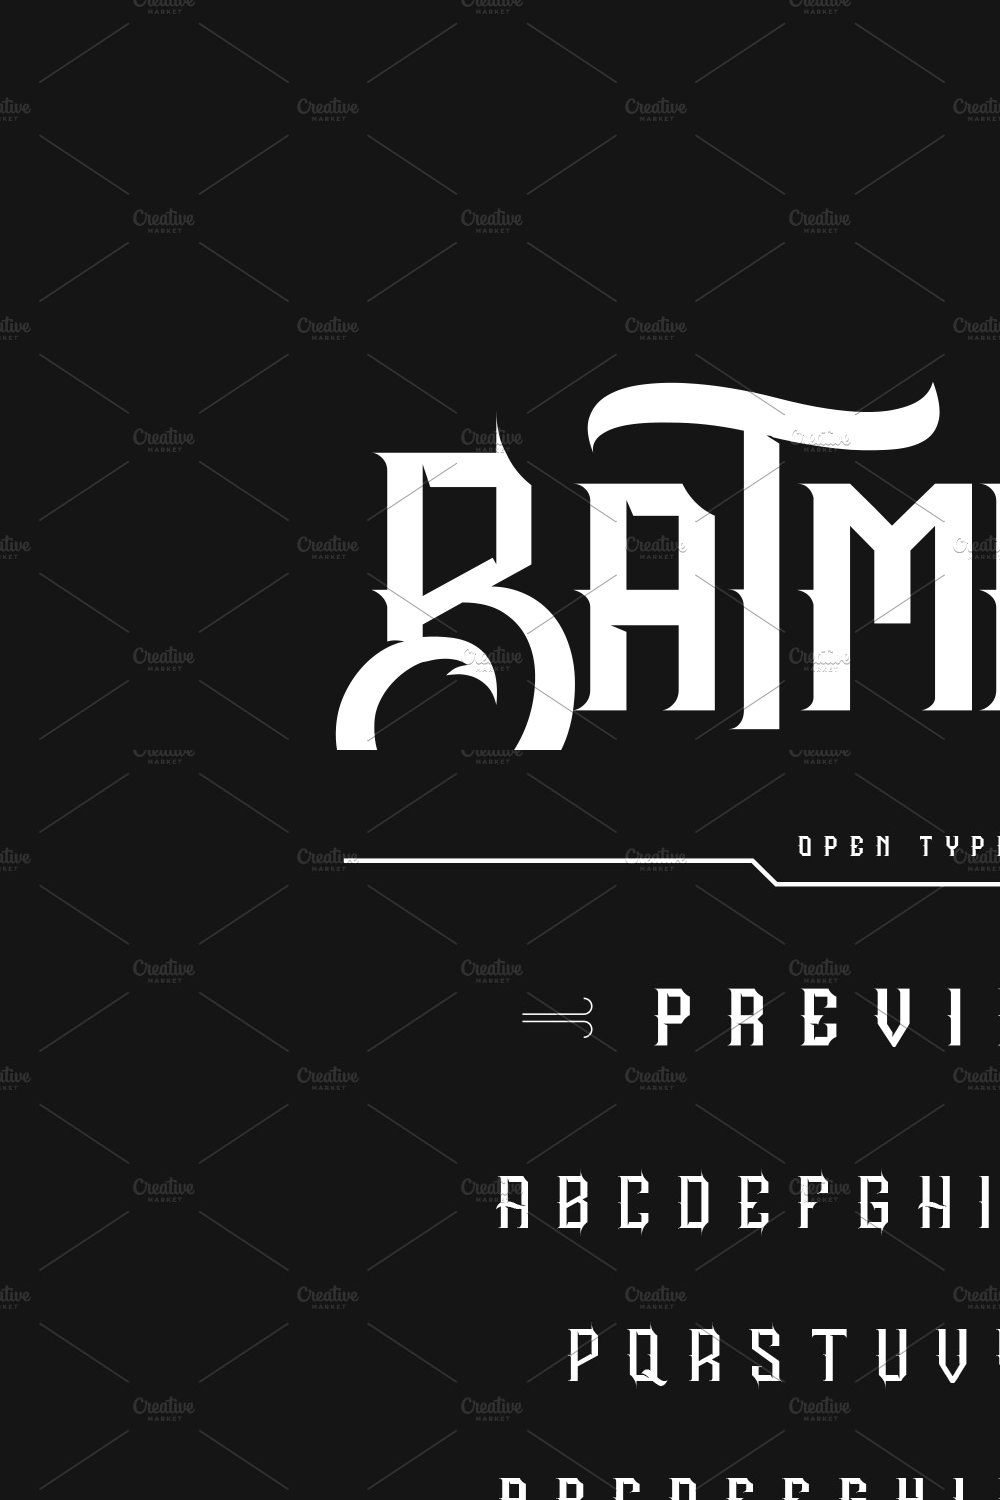 BATMANIA pinterest preview image.